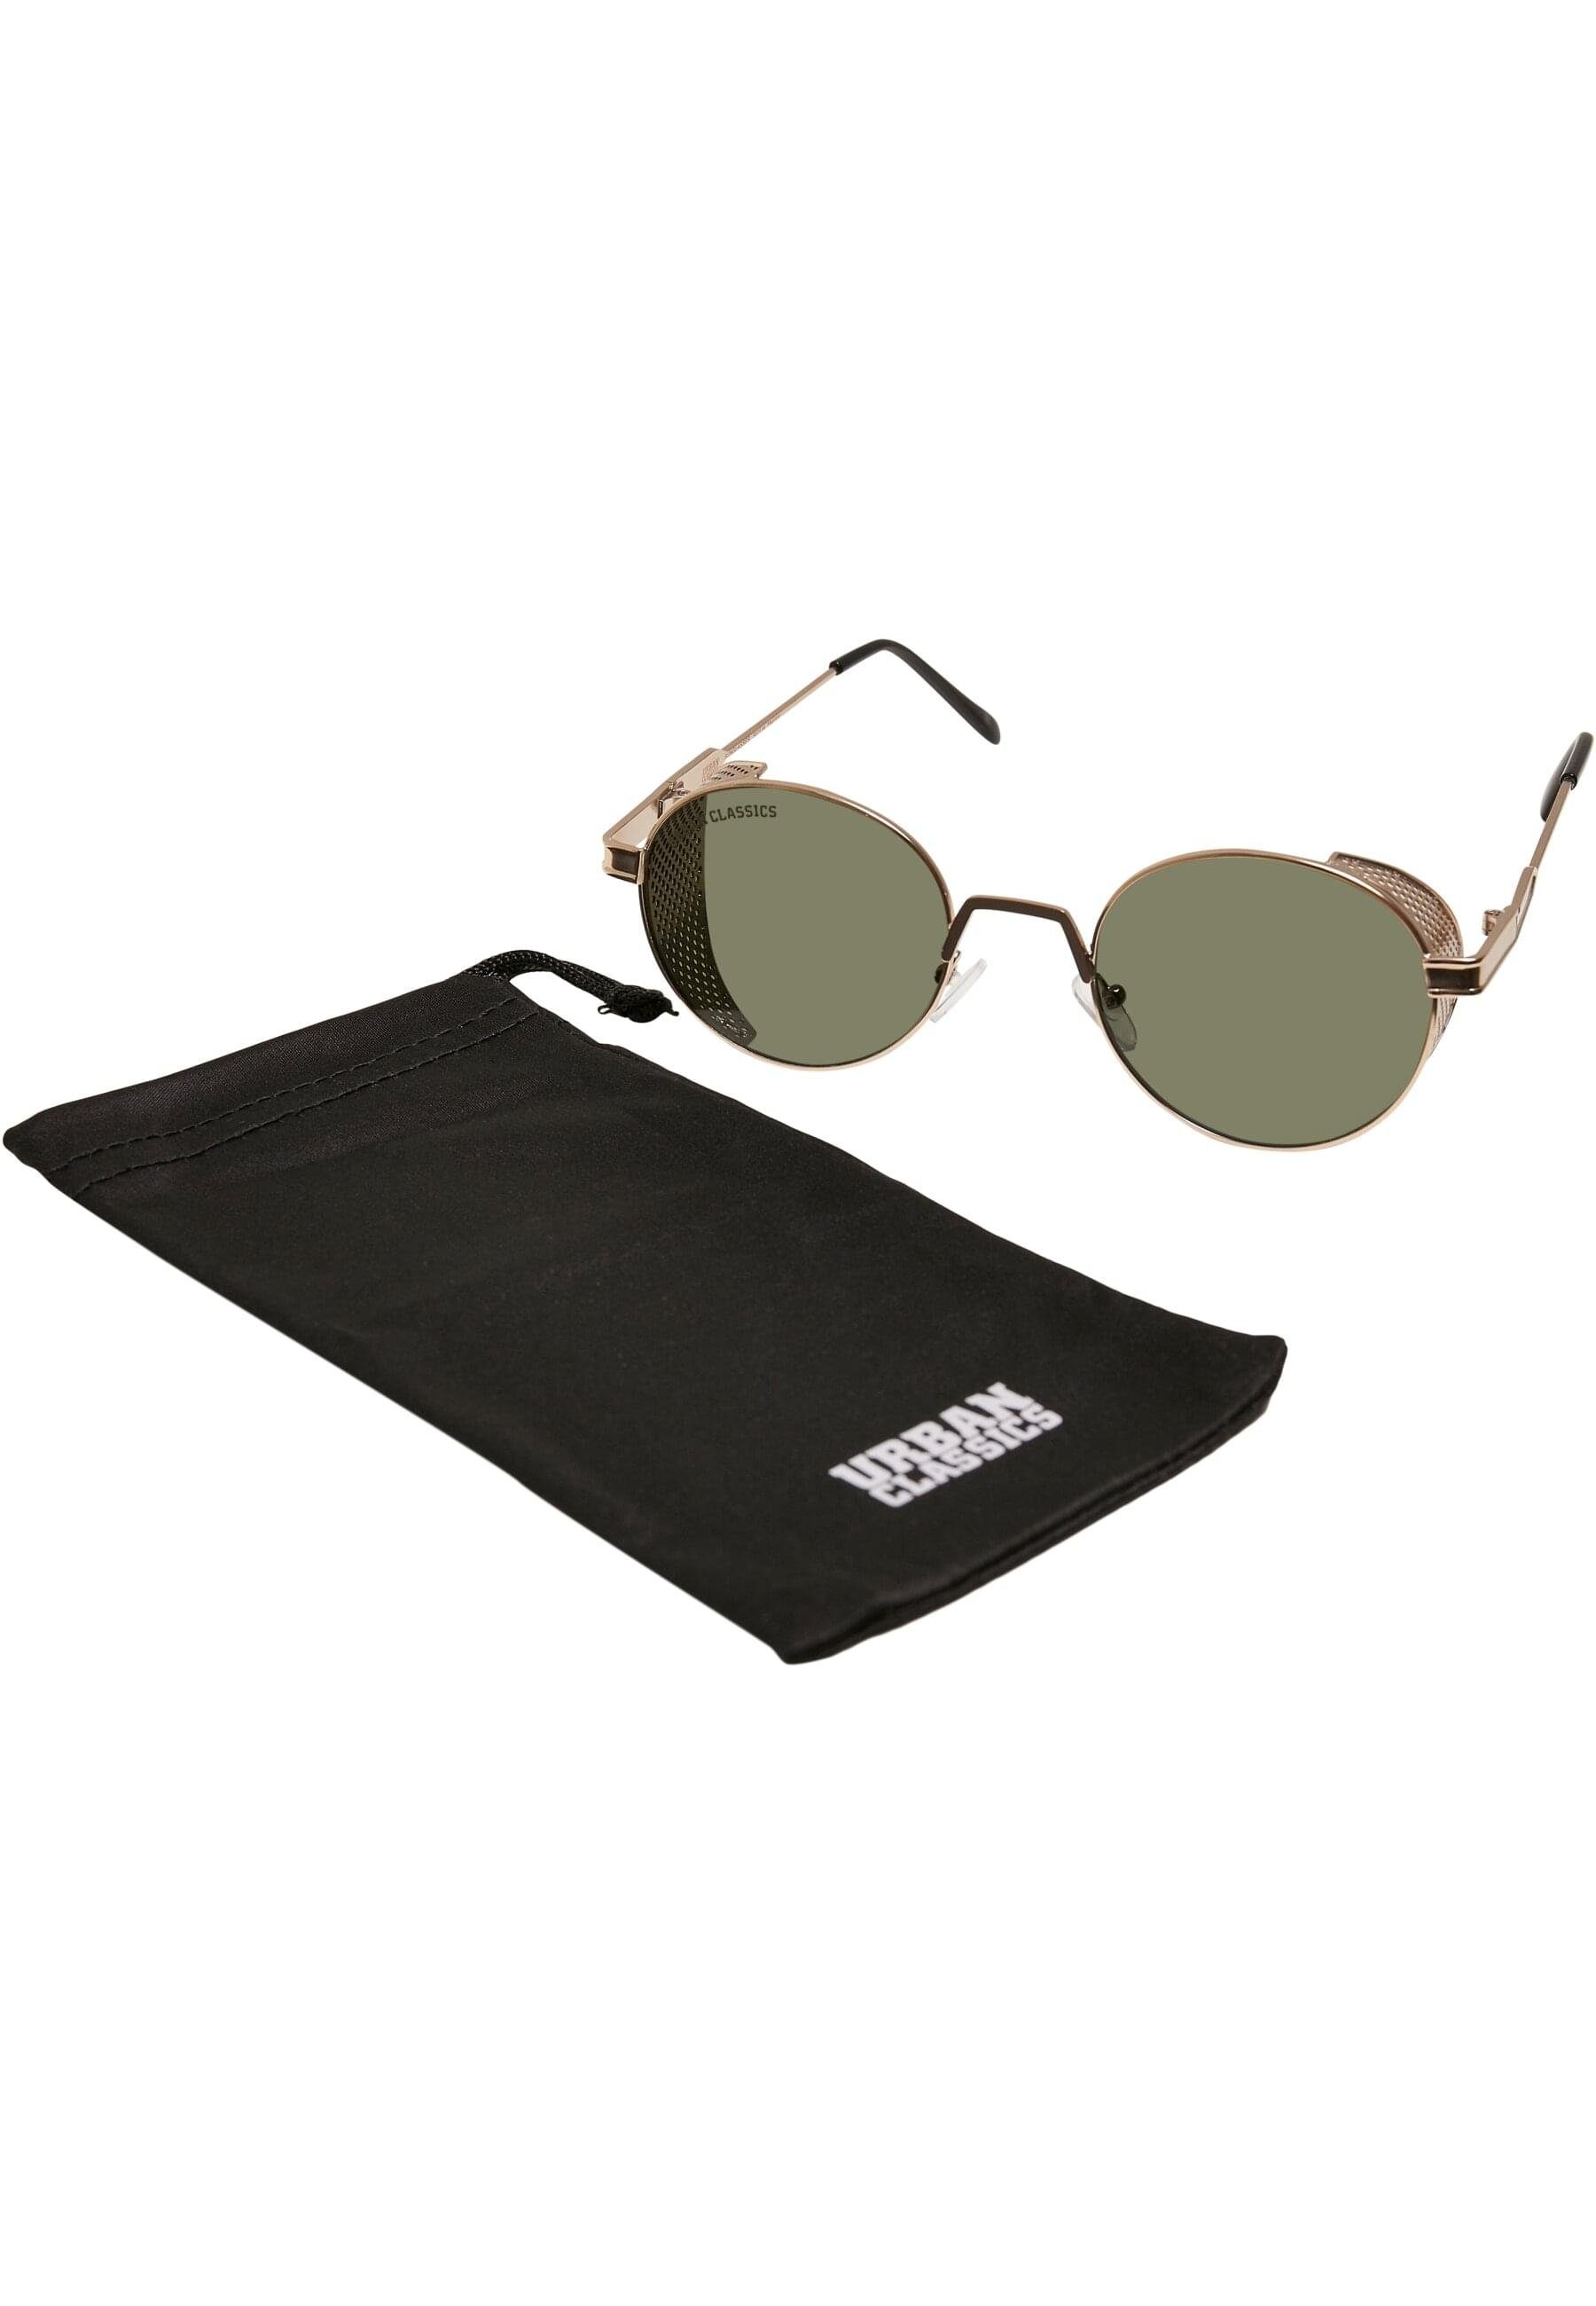 URBAN CLASSICS Sicilia Sonnenbrille Sunglasses Unisex